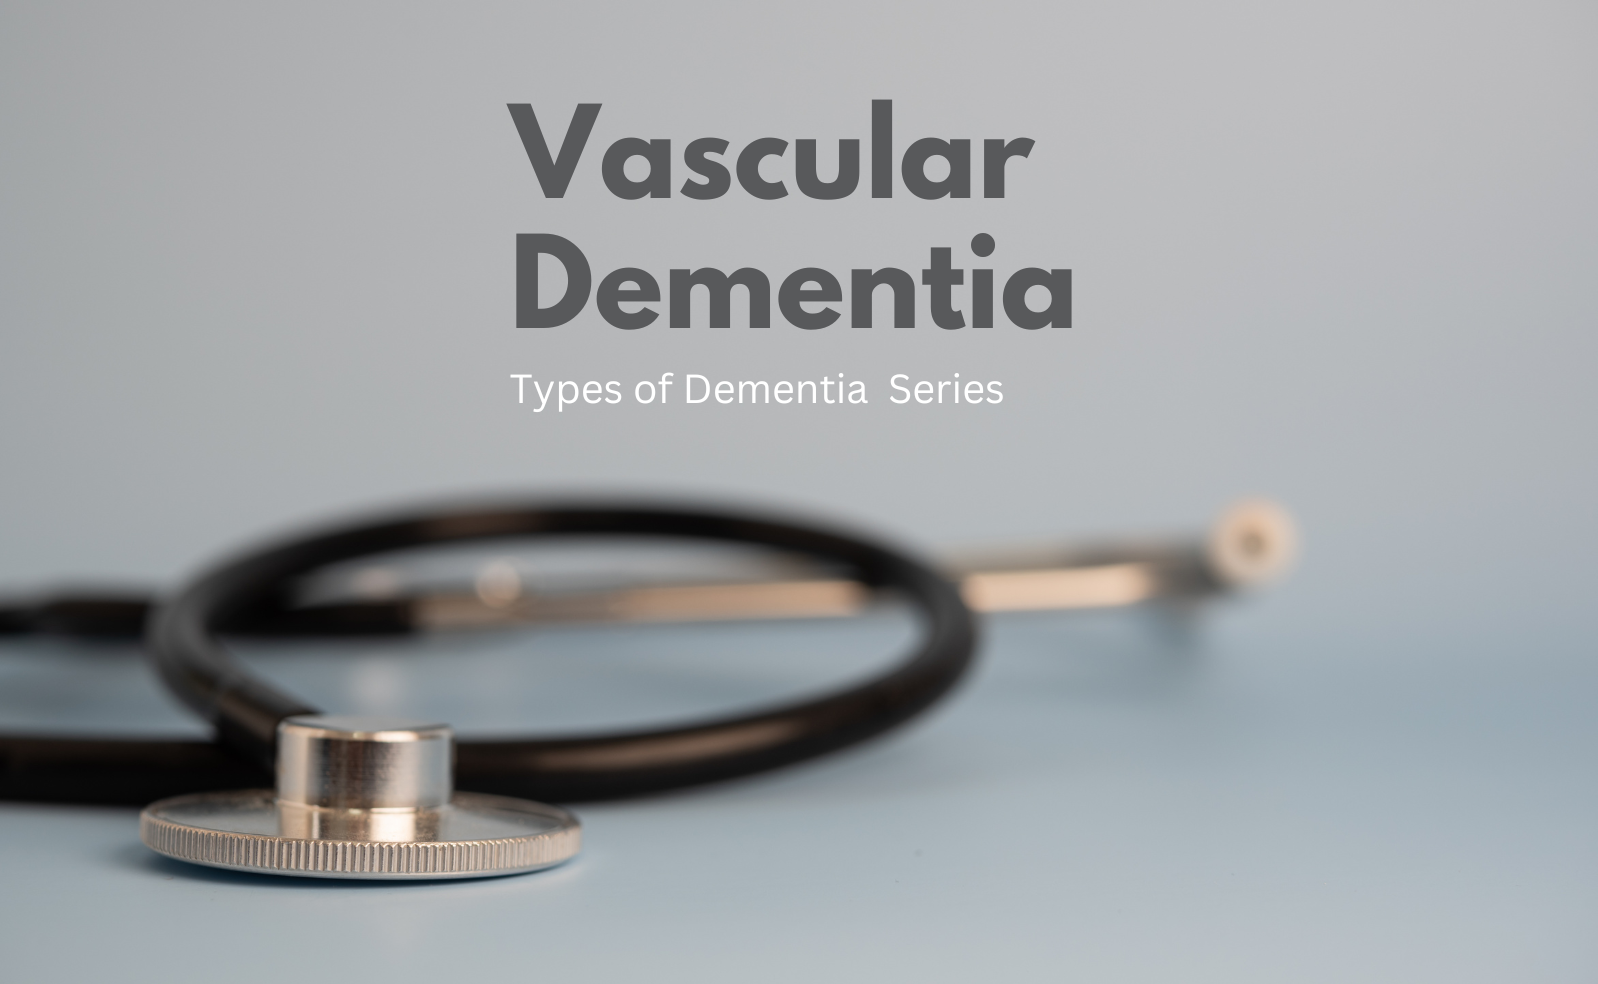 Vascular Dementia Types of Dementia